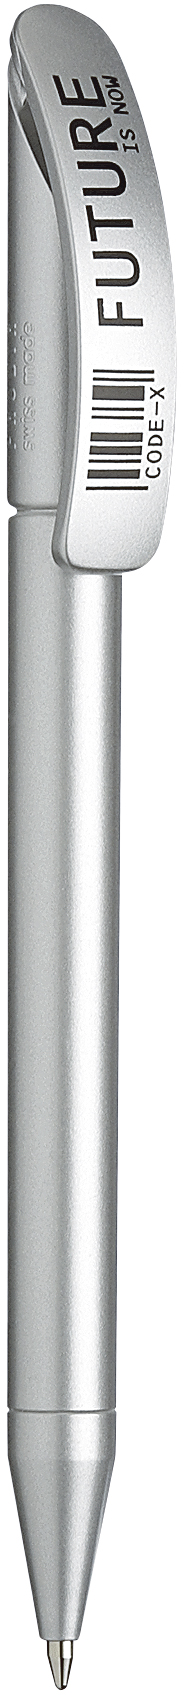 Ручка шариковая Prodir модель DS3 TAA глянцевый металлик